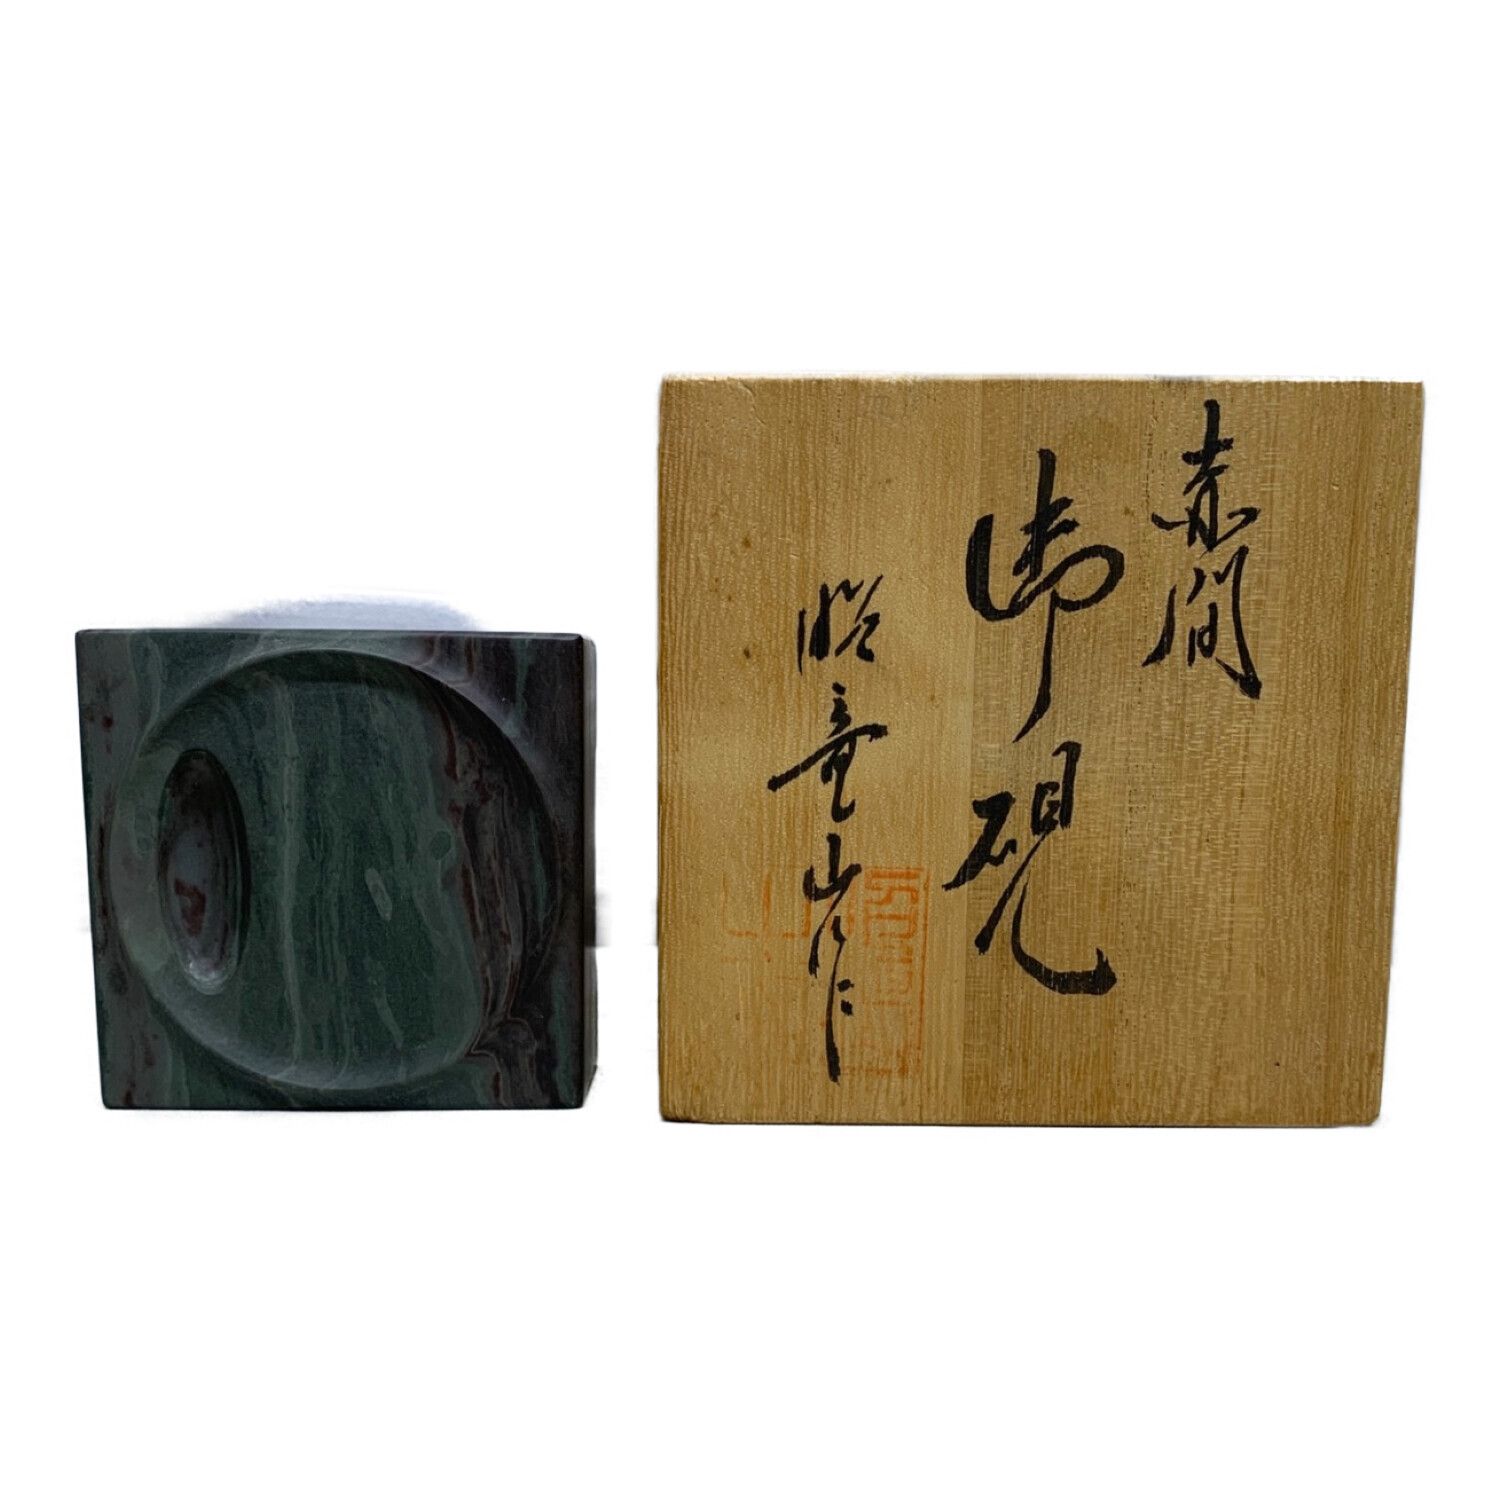 日本で買 赤間硯 昭竜山作 小型の硯 | www.uauctioneers.net